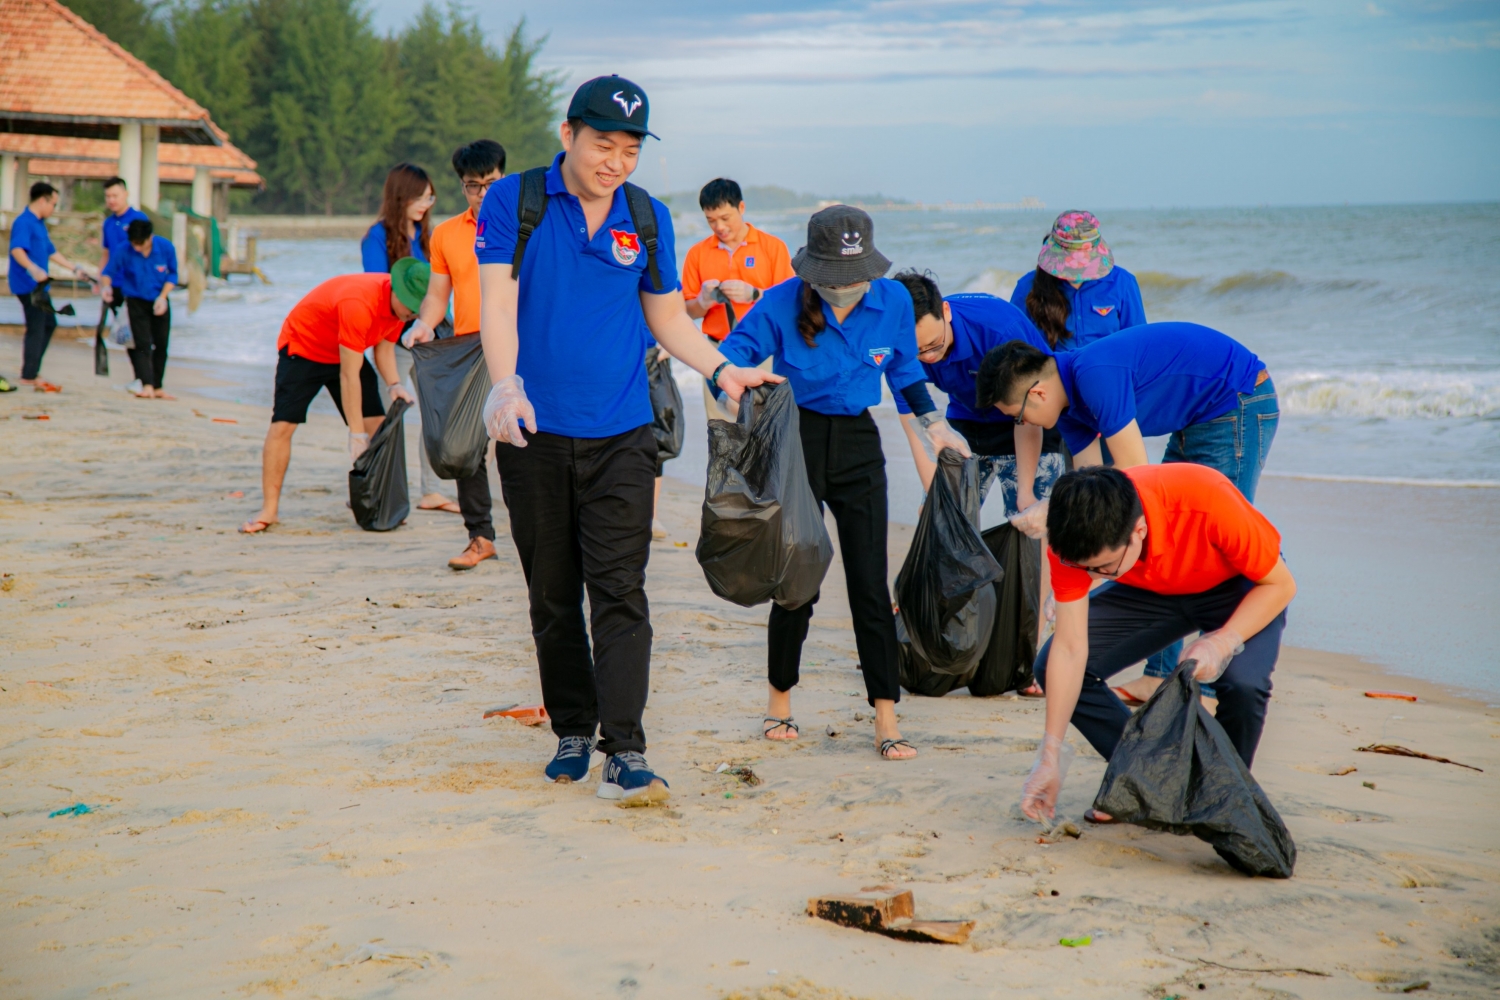 Đoàn Thanh niên PVEP tổ chức về nguồn, thực địa kết hợp tham gia bảo vệ môi trường tại Vũng Tàu